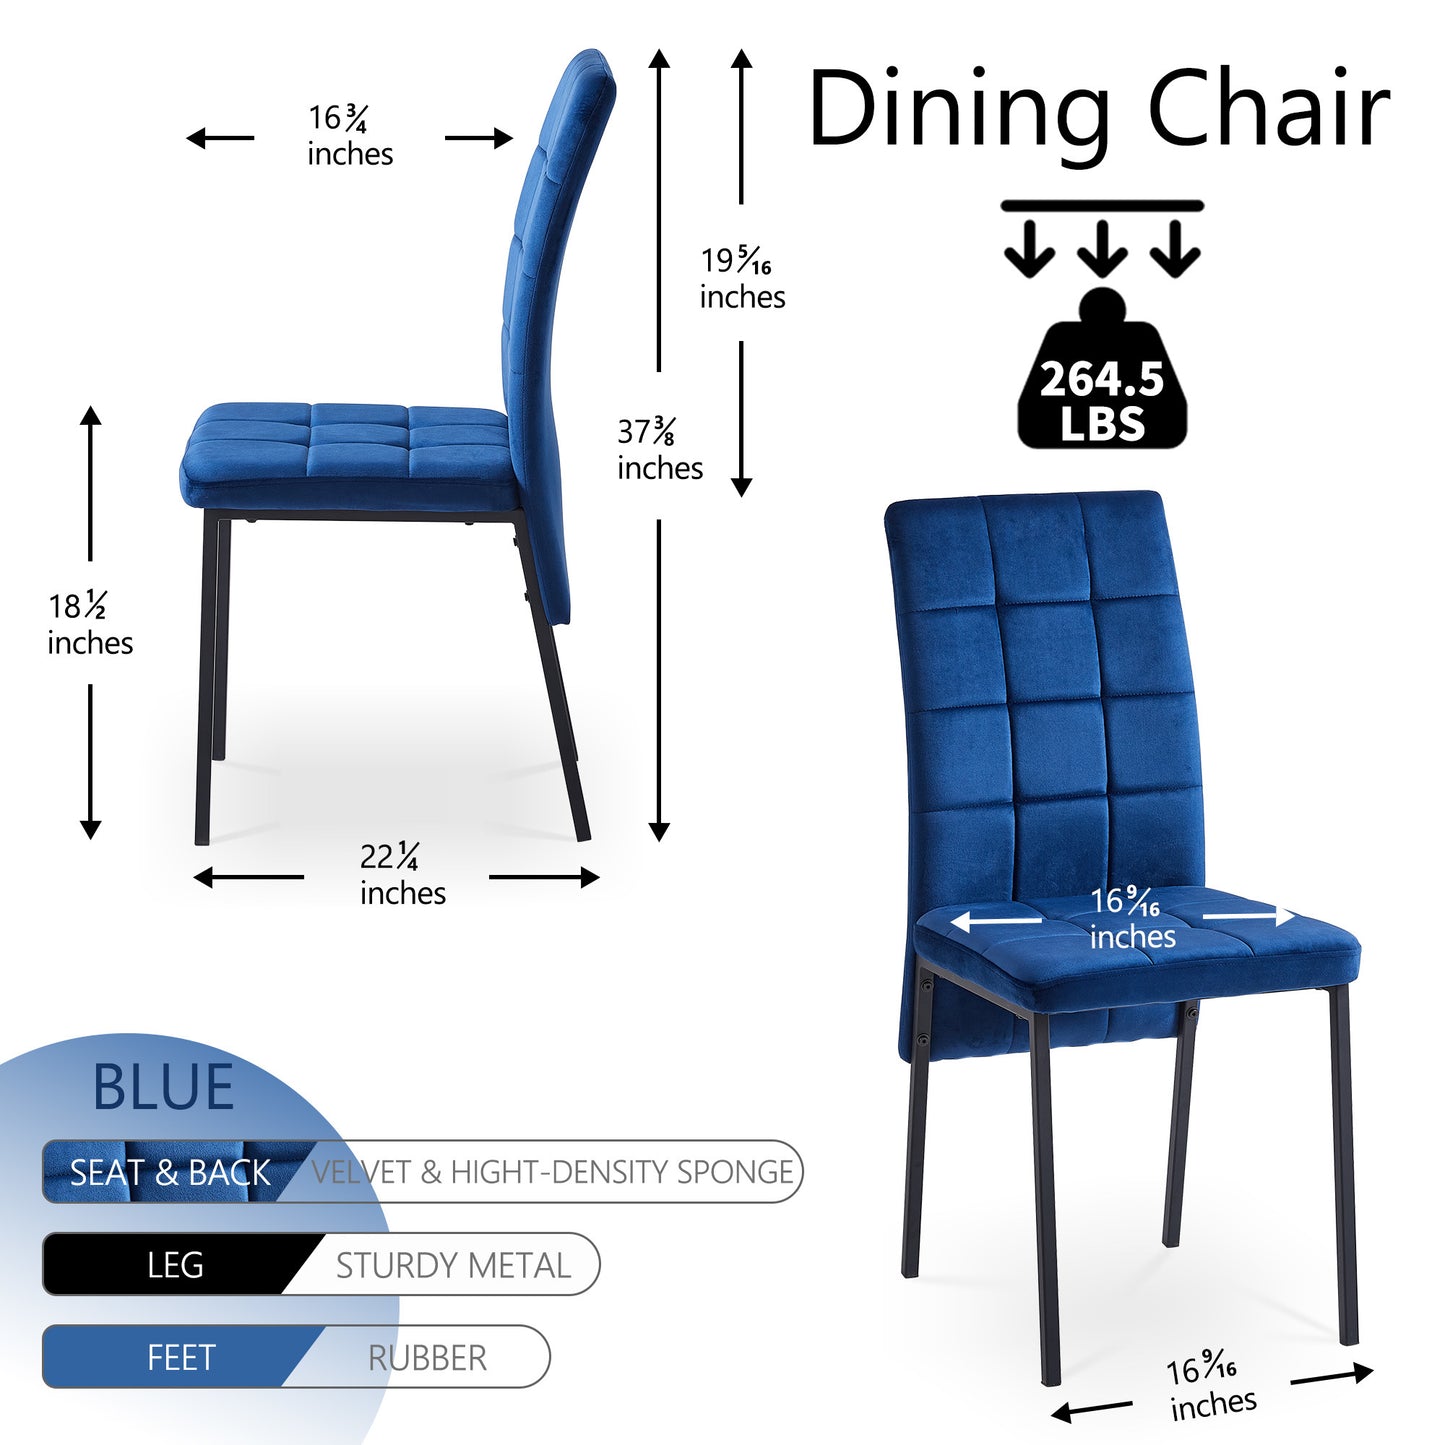 nordic dining chairs set of 4, dark blue velvet high back